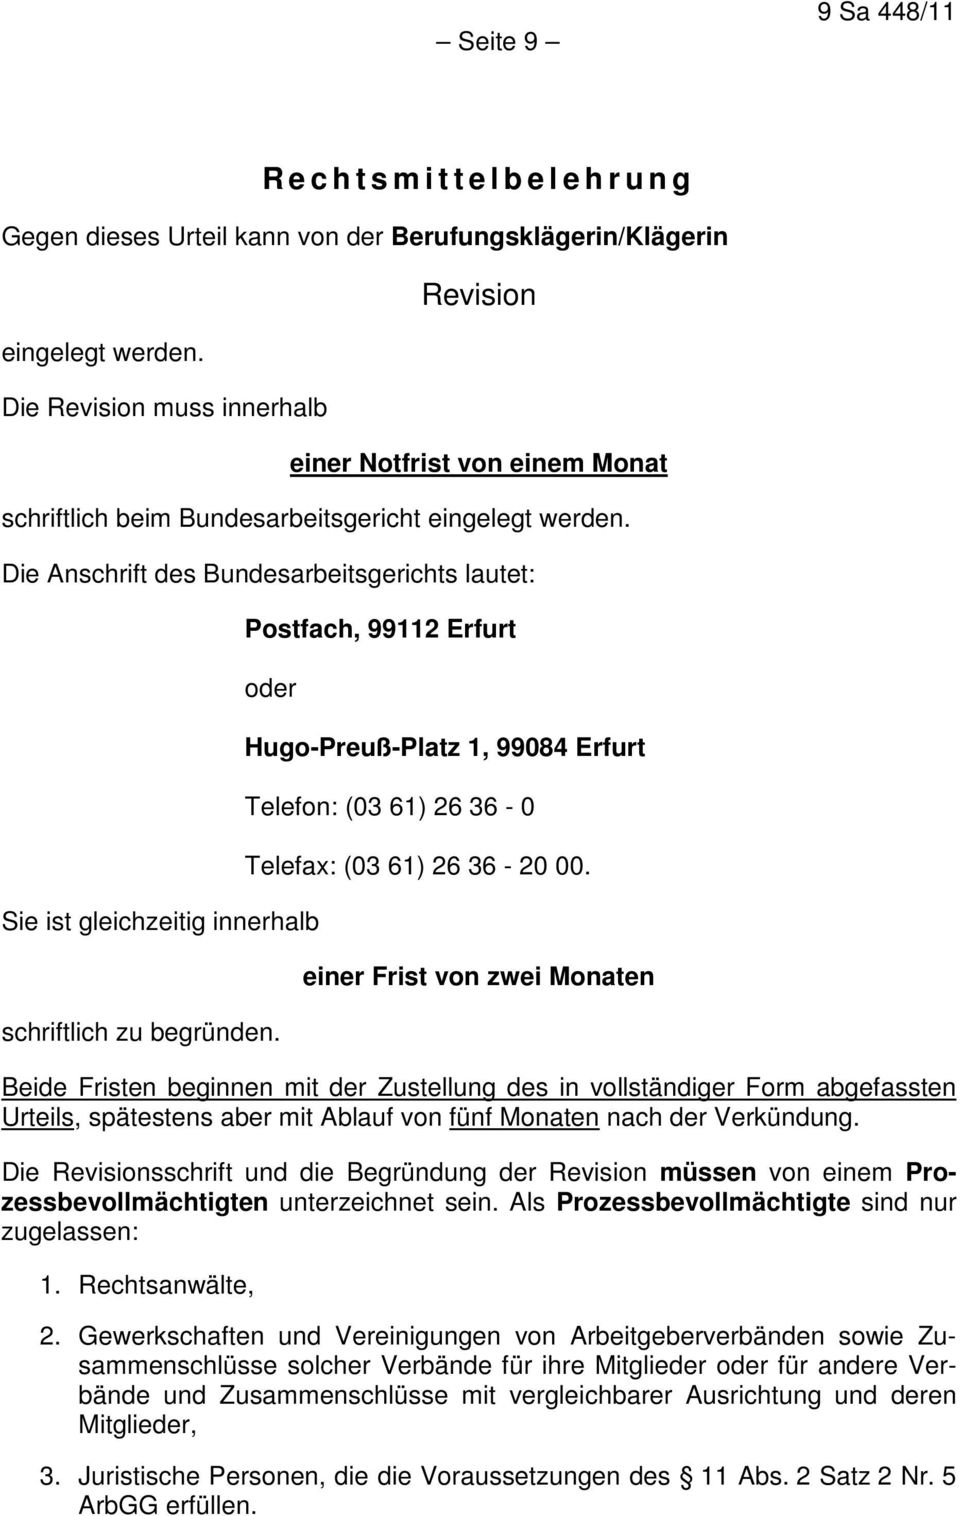 Die Anschrift des Bundesarbeitsgerichts lautet: Postfach, 99112 Erfurt oder Sie ist gleichzeitig innerhalb schriftlich zu begründen.